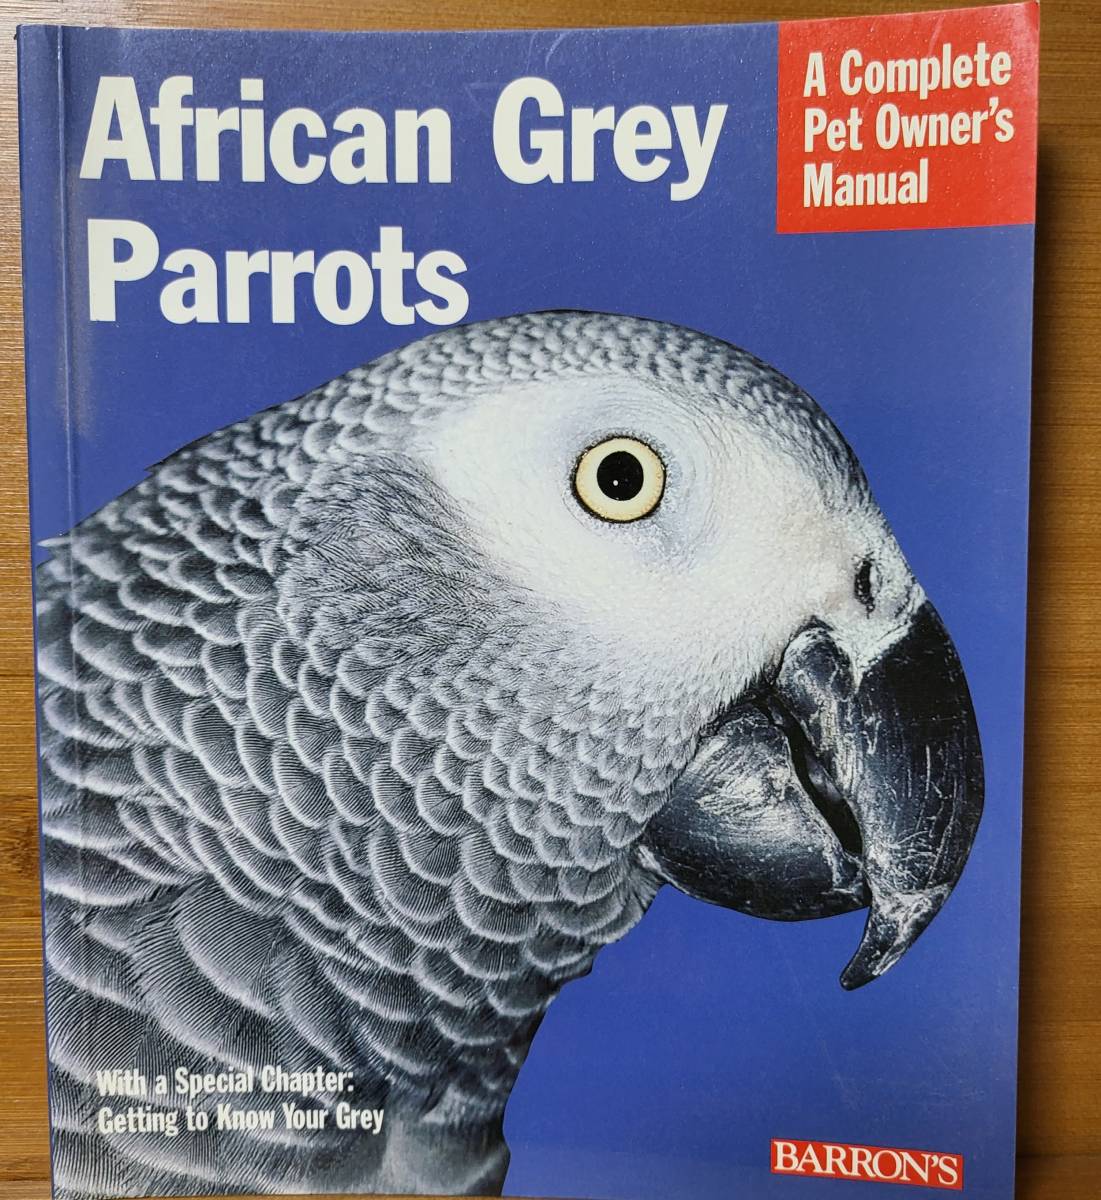 African Grey Parrots アフリカン・グレイ・パロット ヨウムの飼育マニュアル 洋書 英語版の画像1